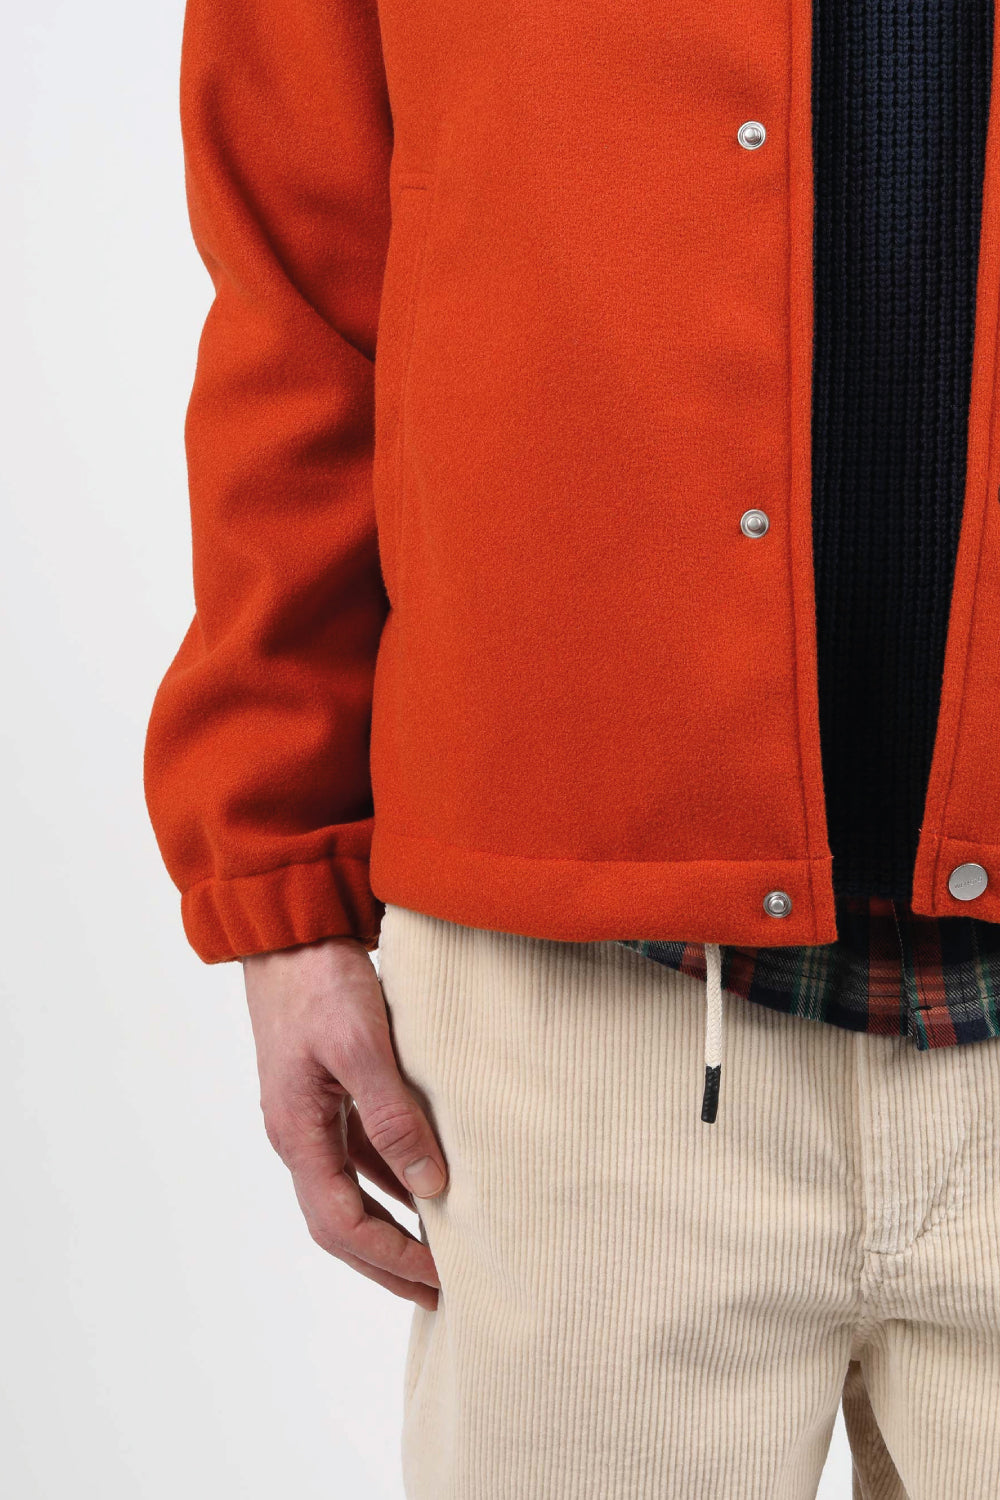 chaqueta en fieltro vegano de color naranja oxido certificado, con botones de cierre y cordones de ajuste